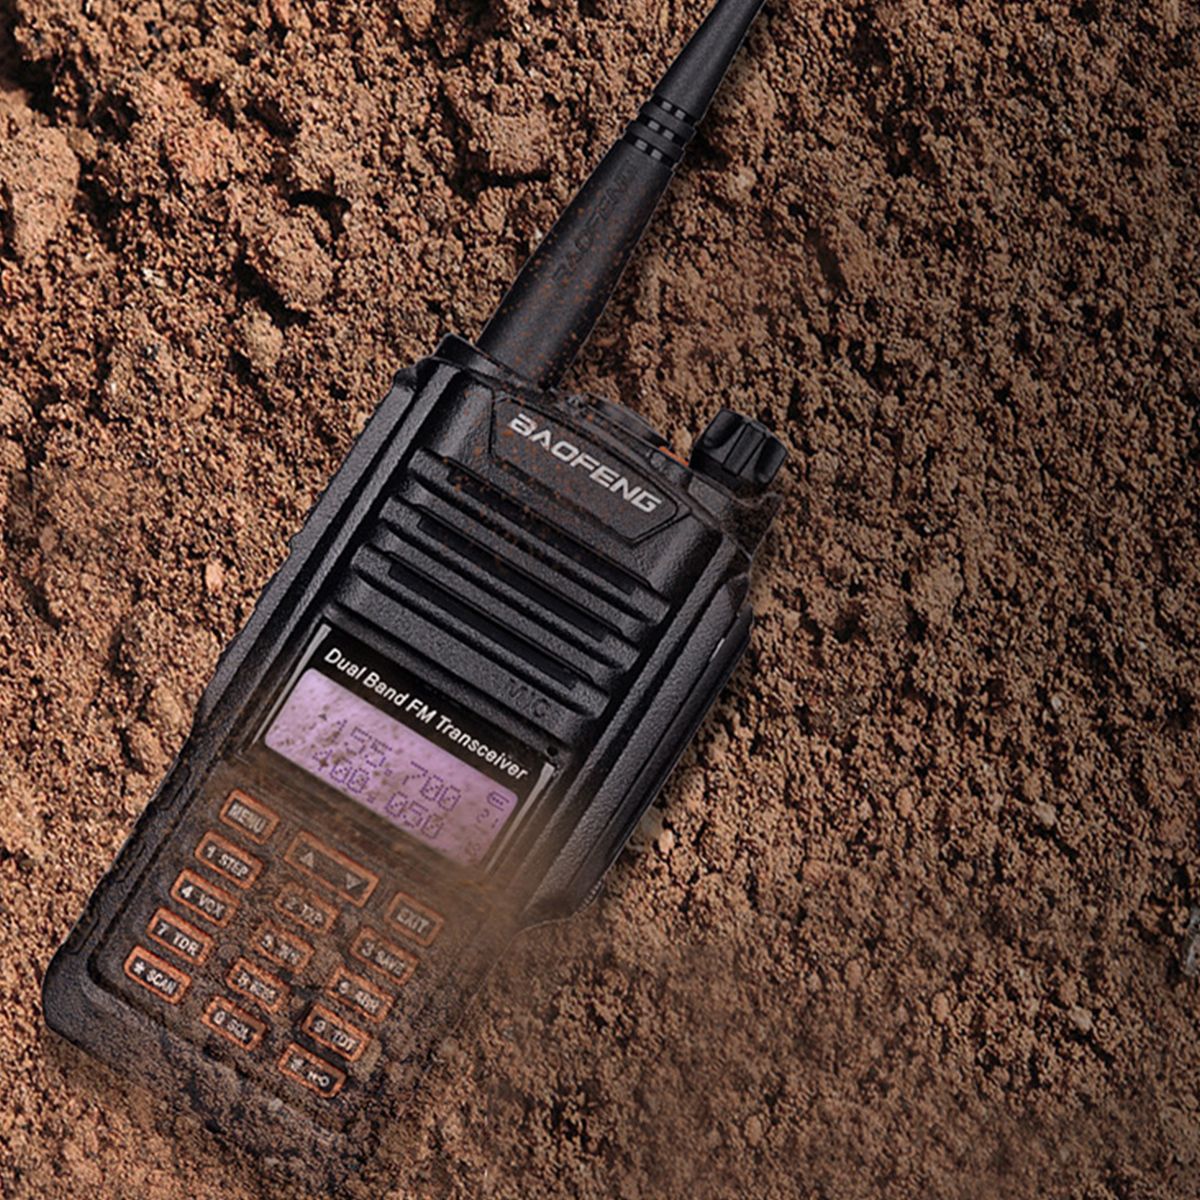 Baofeng-UV-9R-Plus-10W-VHF-UHF-Walkie-Talkie-Dual-Band-Handheld-IP67-Waterproof-Two-Way-Radio-1606039